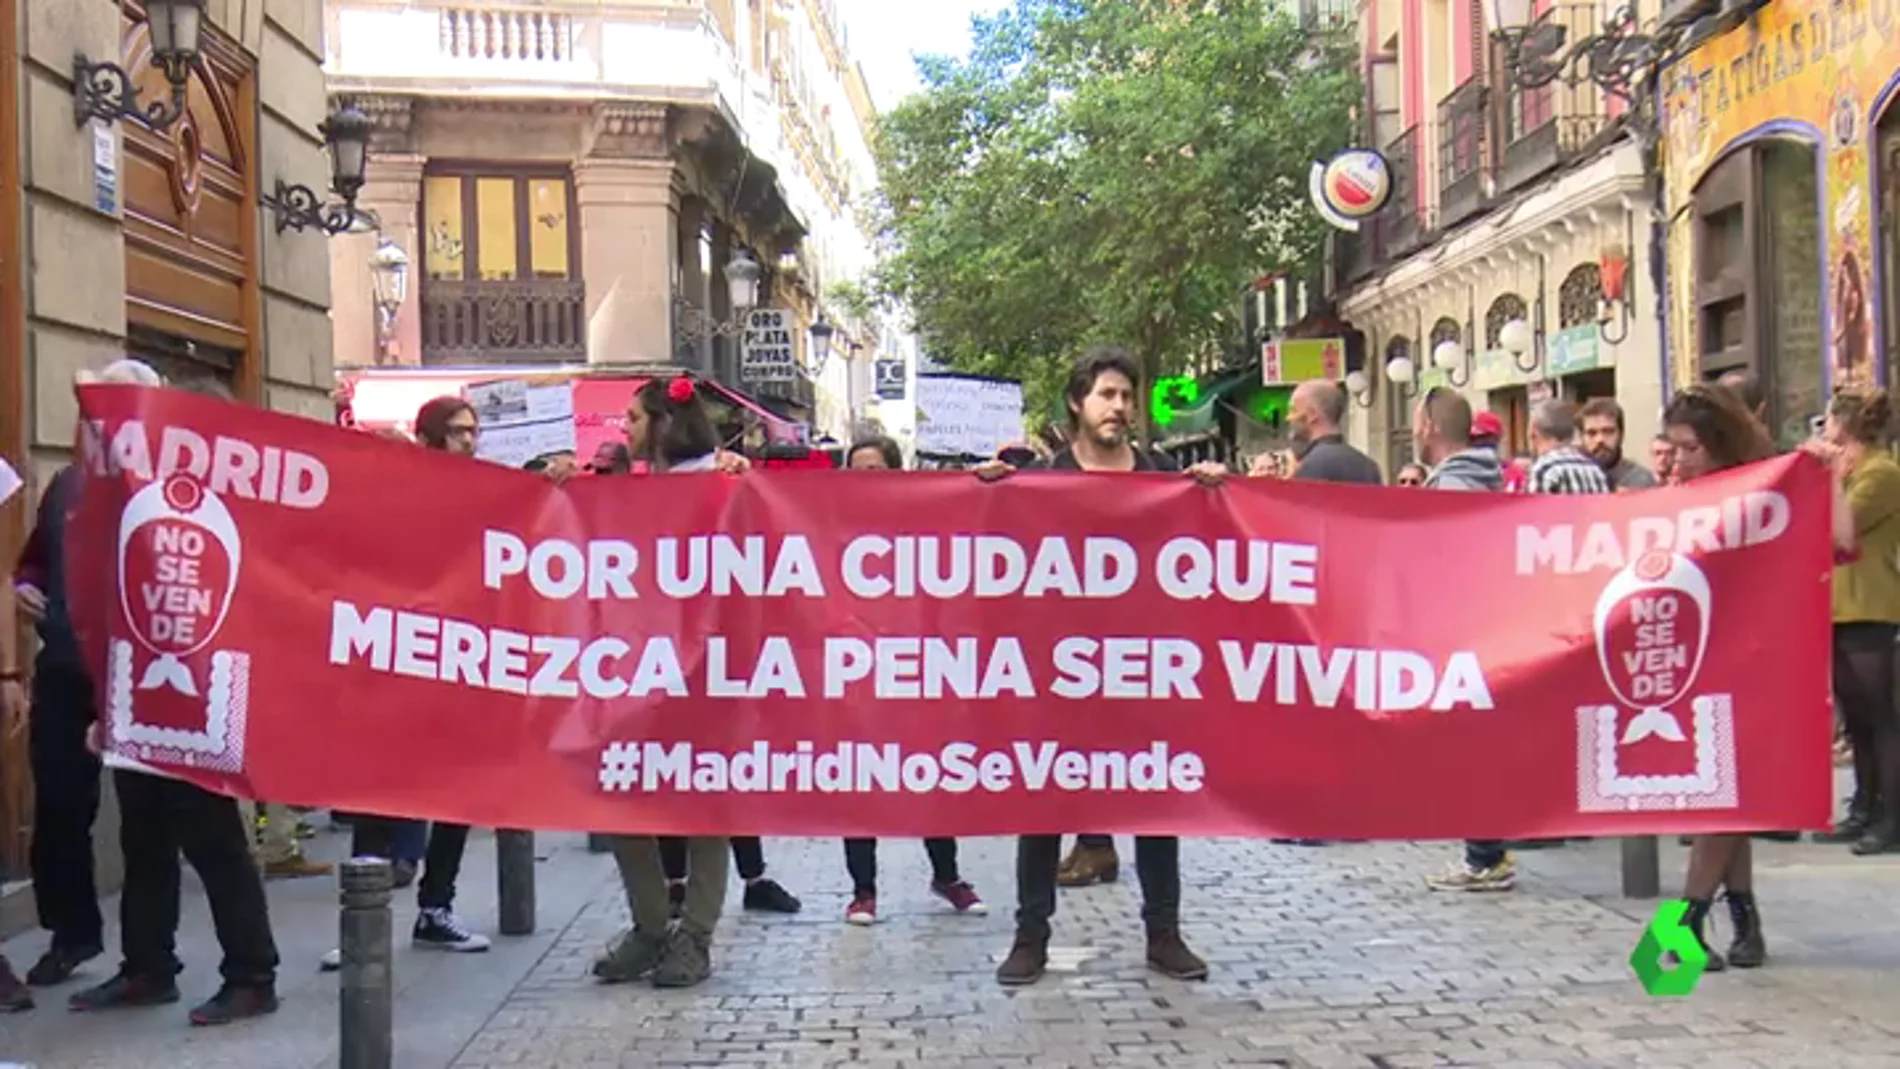 Manifestación en Madrid en defensa de que la capital debe pertenecer a los ciudadanos y no "a las grandes empresas ni a la clase política"